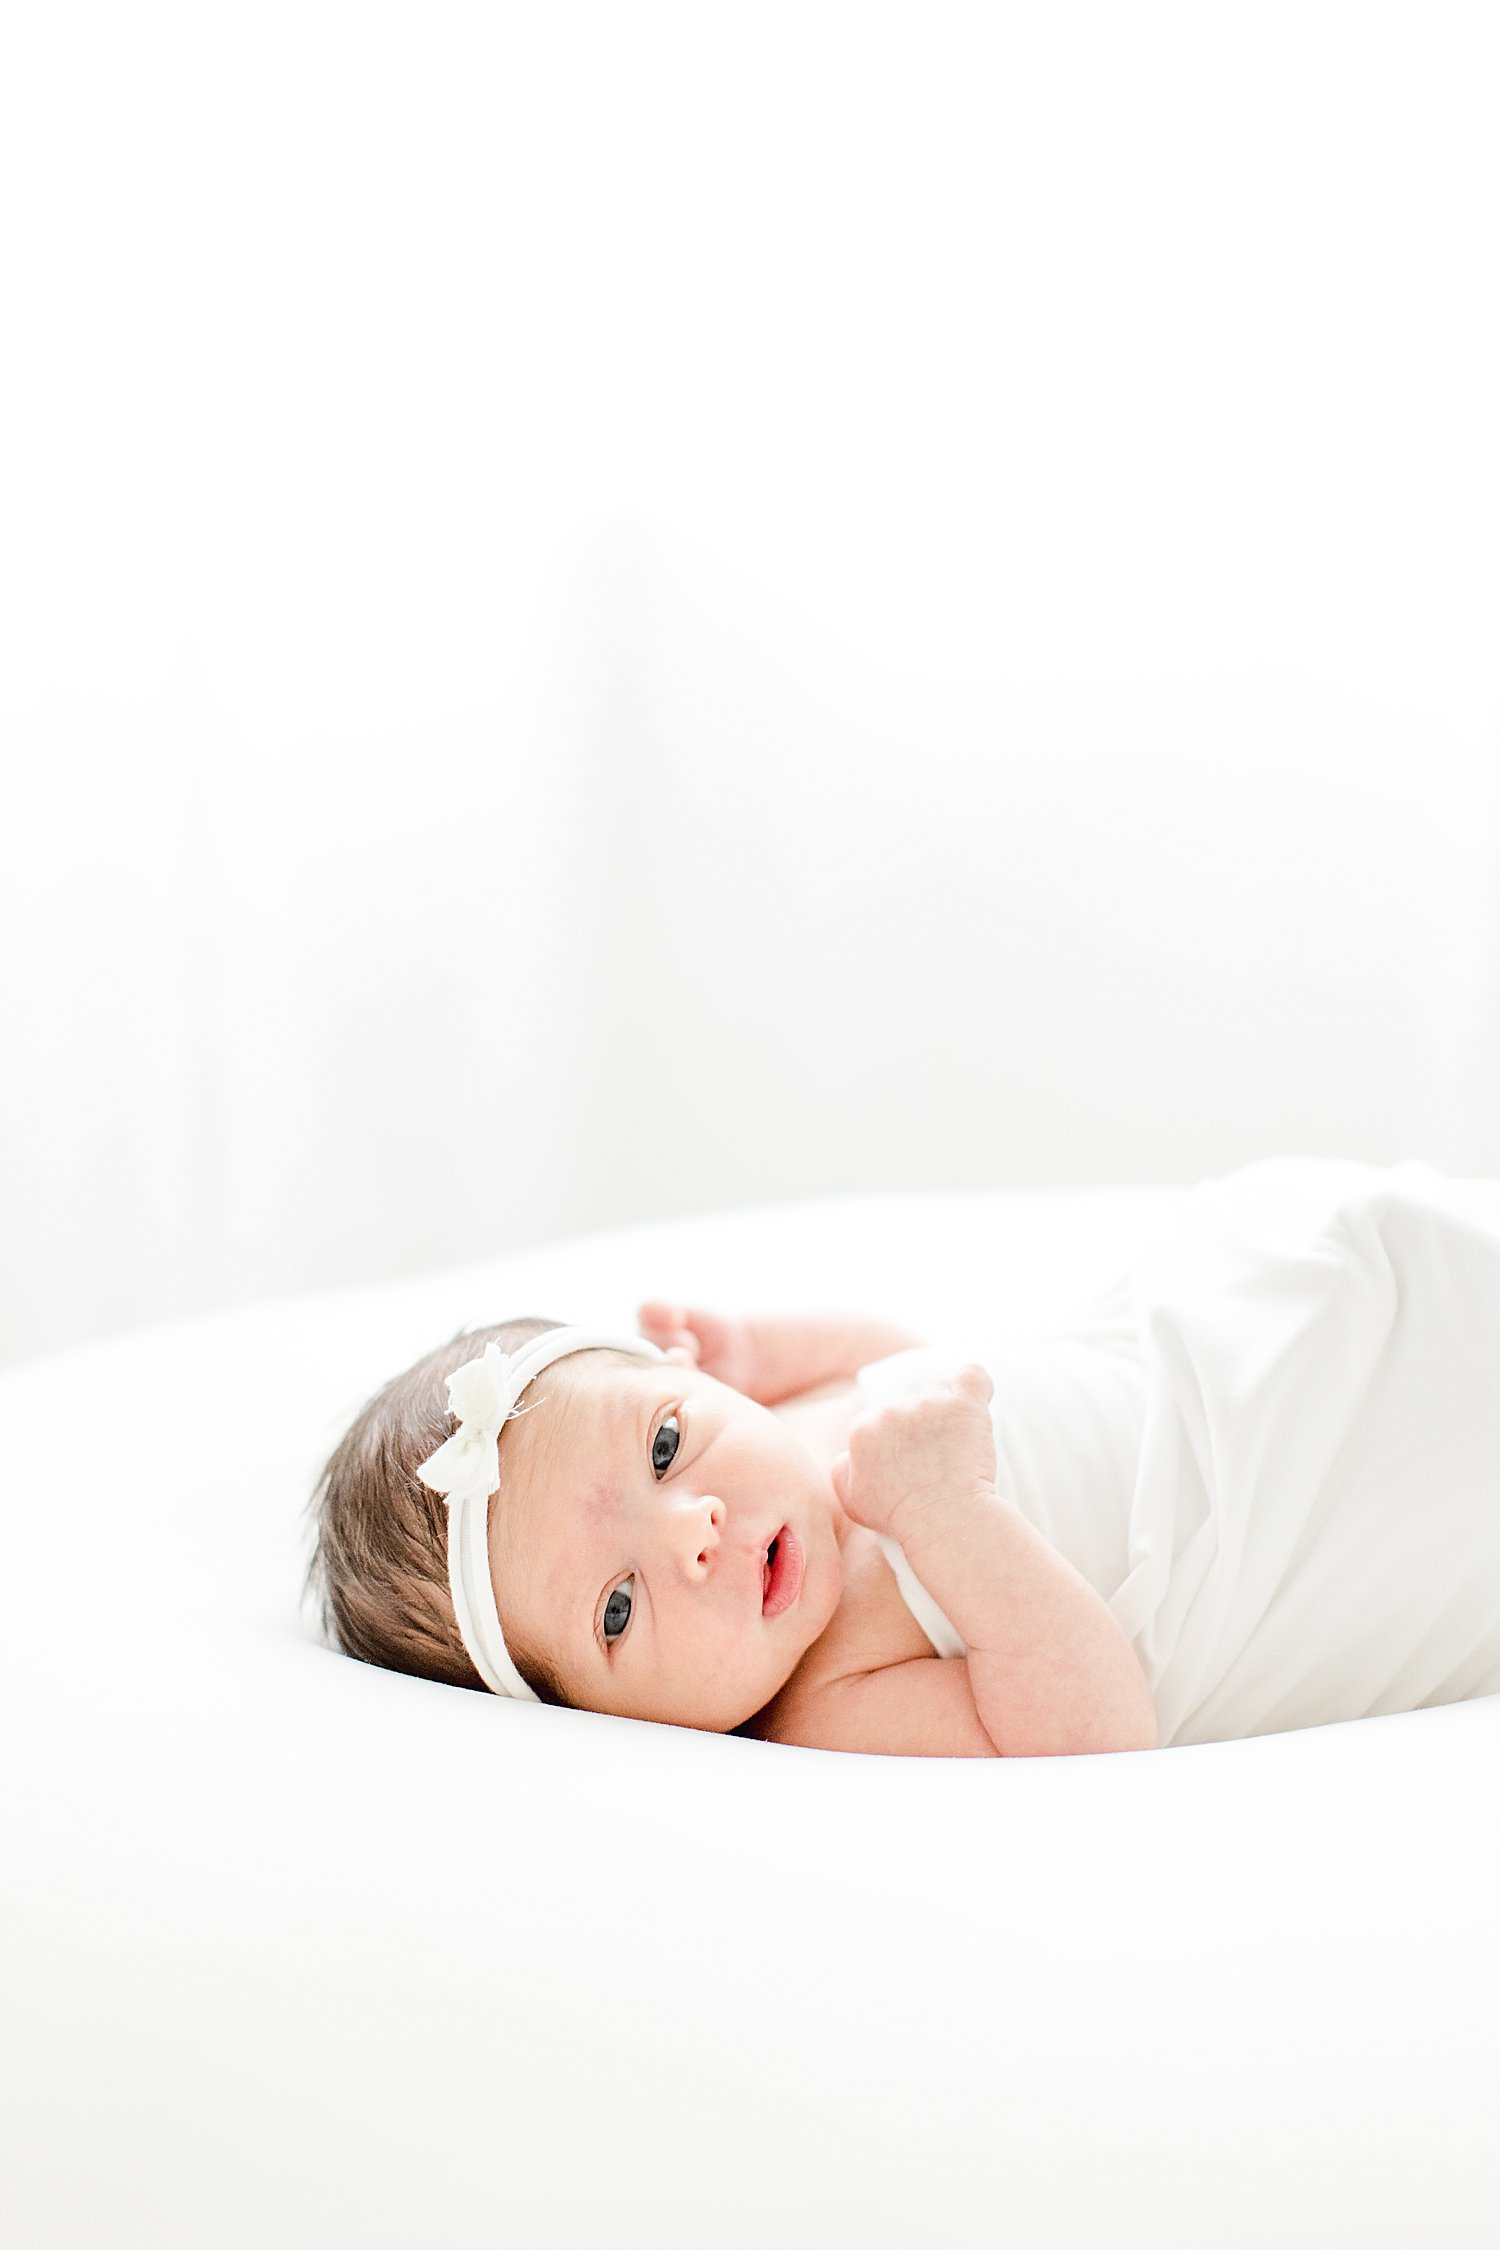 Newborn baby girl awake during photoshoot | Kristin Wood Photography